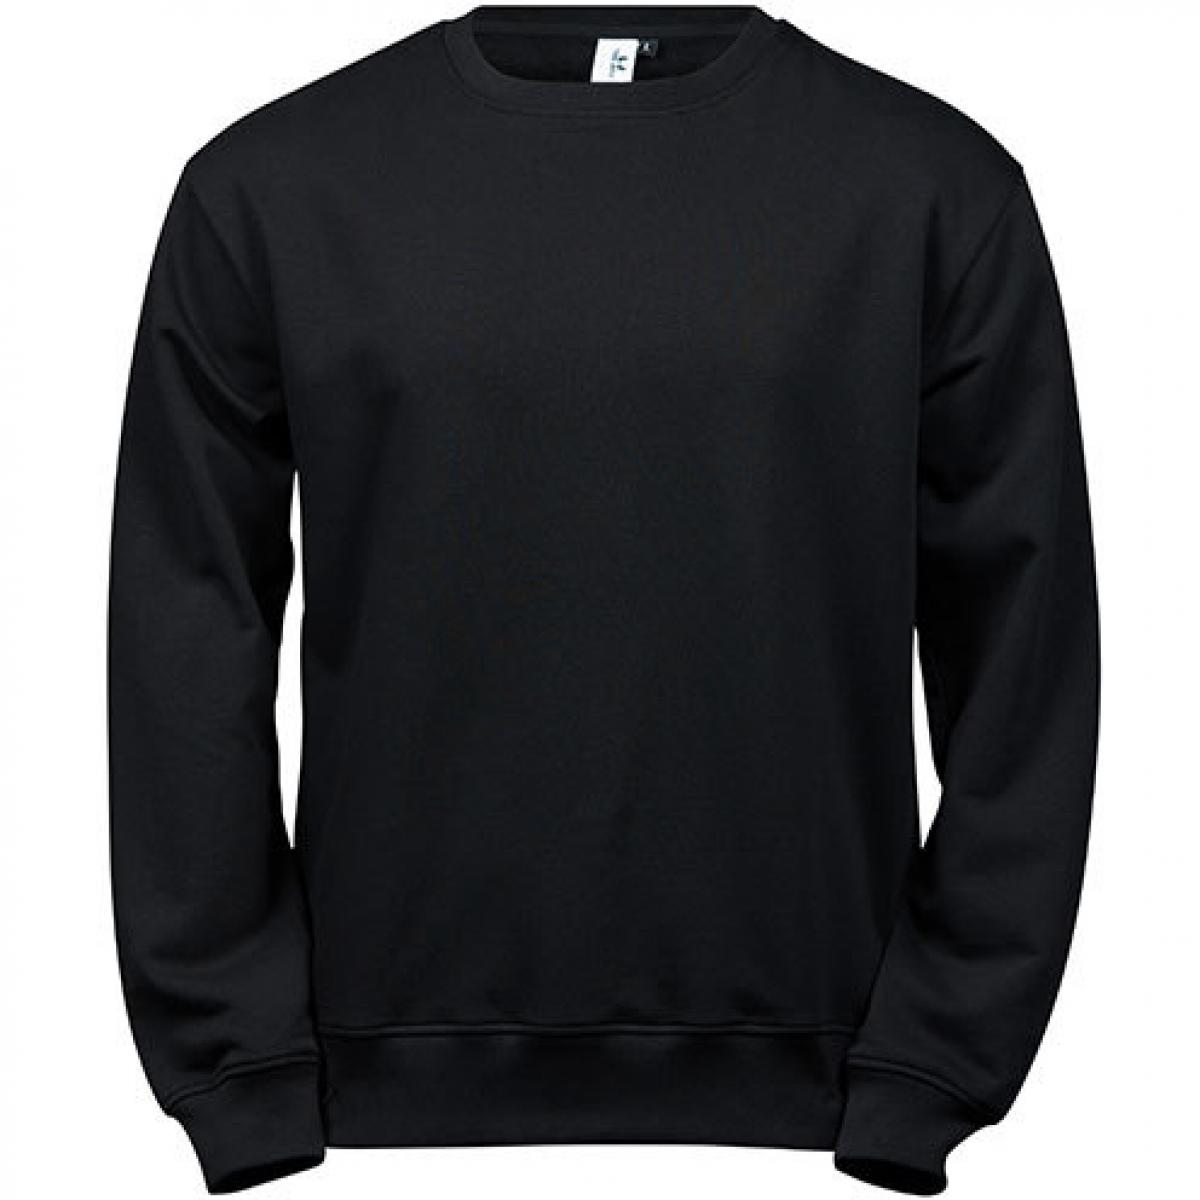 Hersteller: Tee Jays Herstellernummer: 5100 Artikelbezeichnung: Power Sweatshirt - Waschbar bis 60 °C Farbe: Black